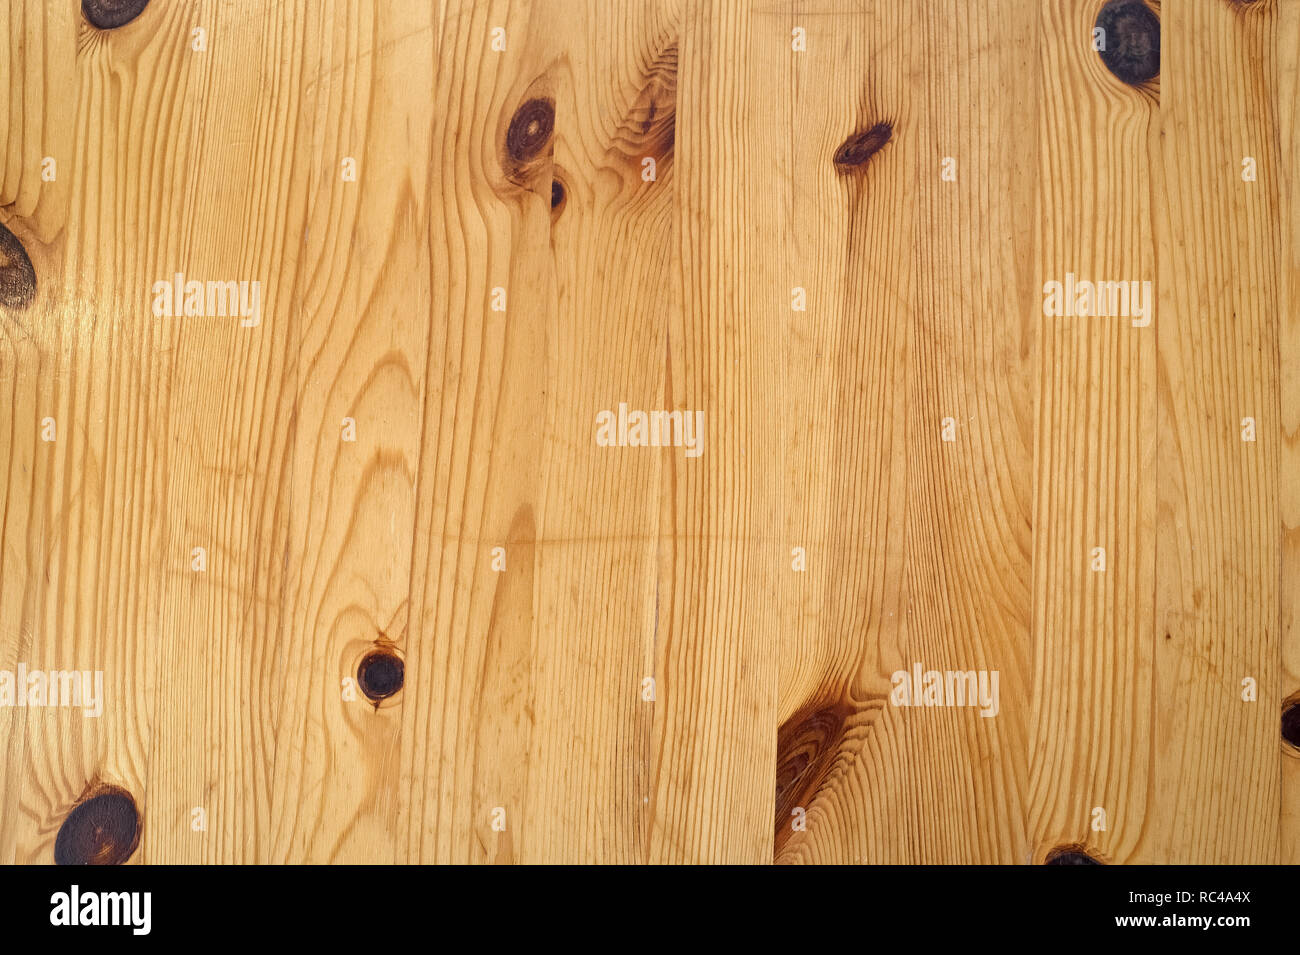 Holzplanken Hintergrund. Holz Textur mit natürlichen Muster. Holzbrett Oberfläche. Einrichtung oder Design. Holz Wand für Kopieren. Stockfoto